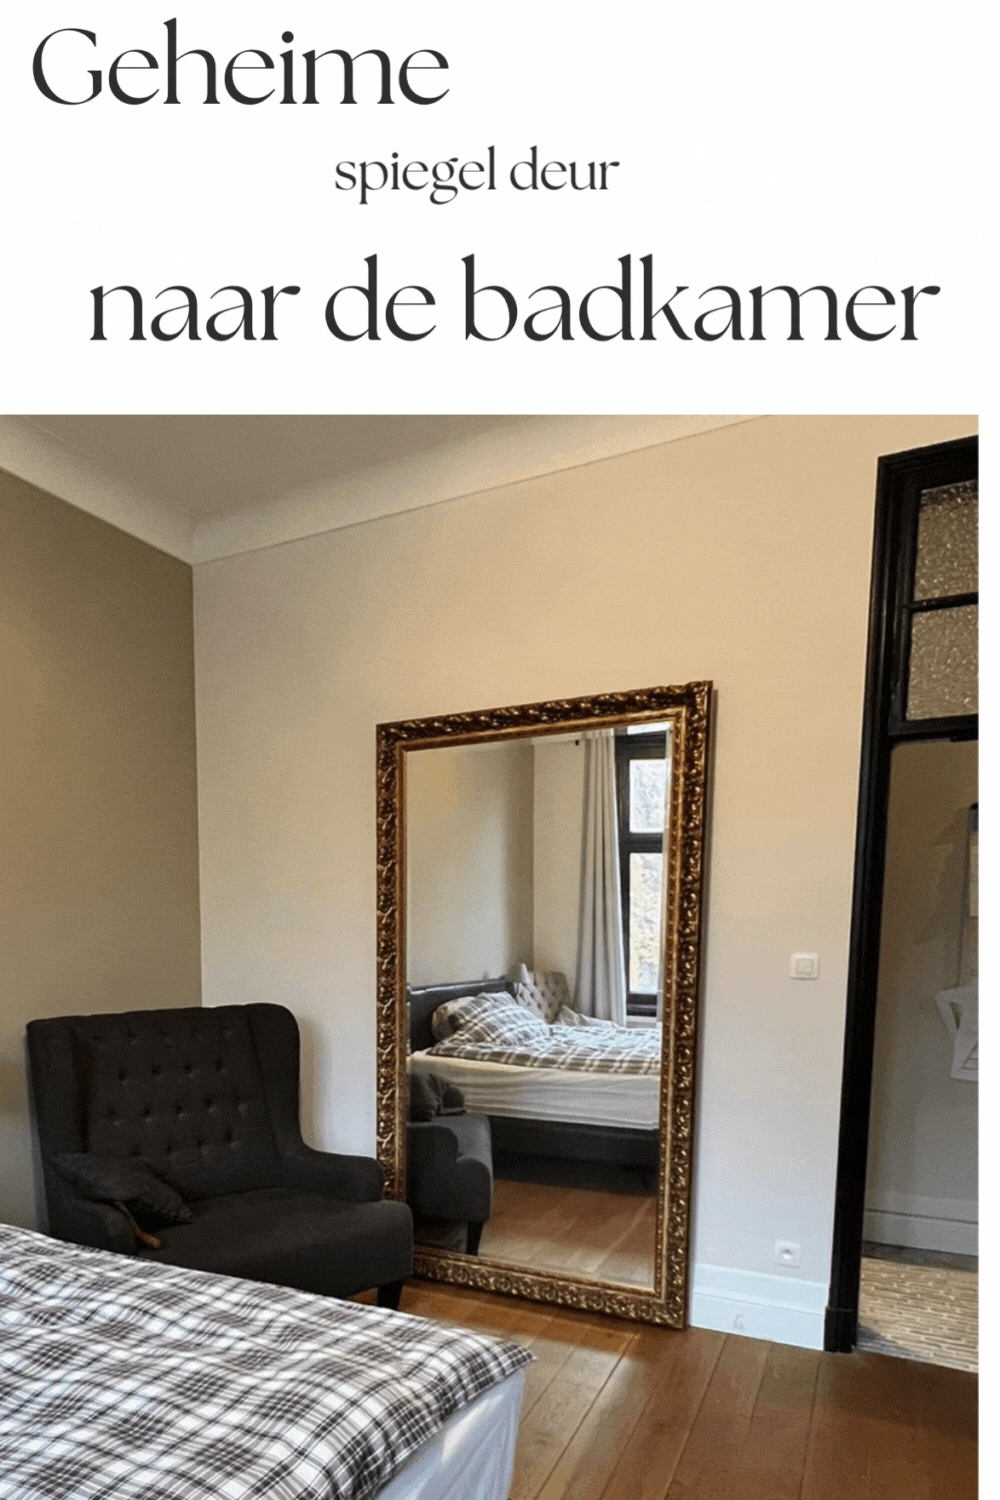 https://foto.barokspiegel.nl/spiegeldeur/Zelf-geheime-spiegel-deur-maken-naar-badkamer.gif